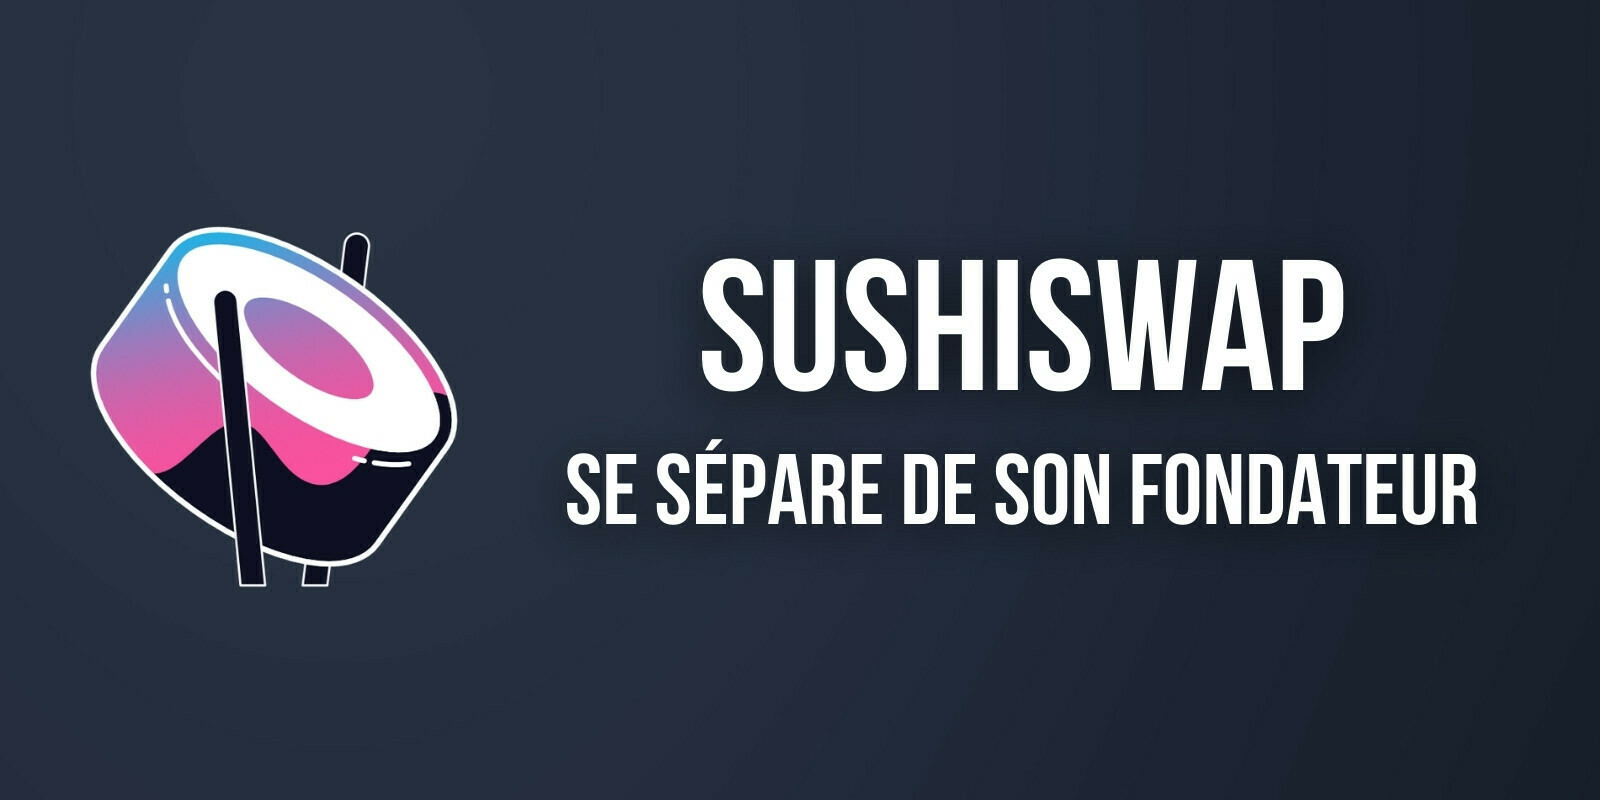 Le co-fondateur historique de SushiSwap se retire de son rôle de leader